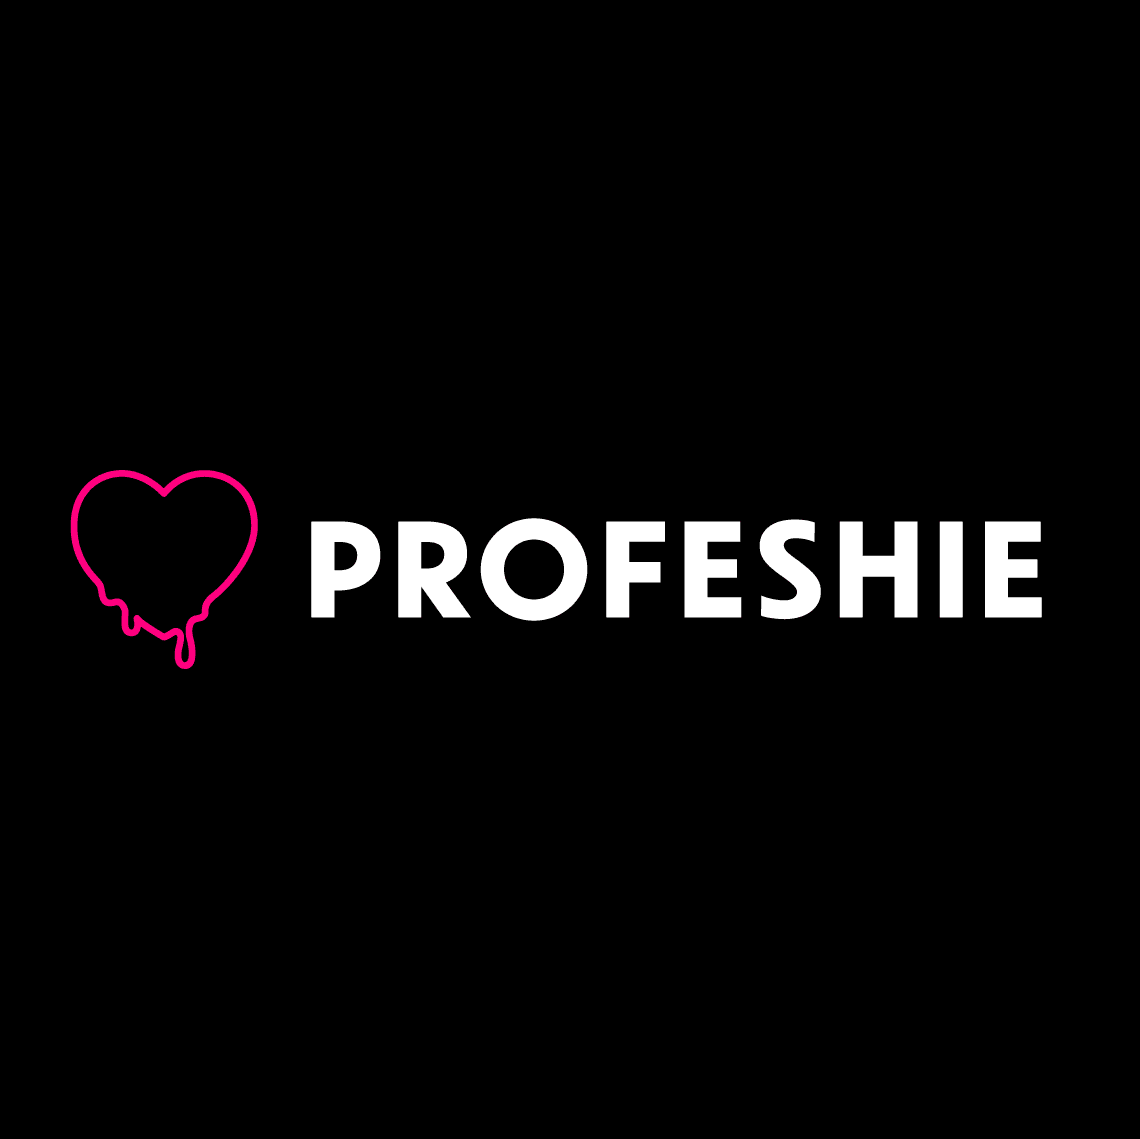 Profeshie logo